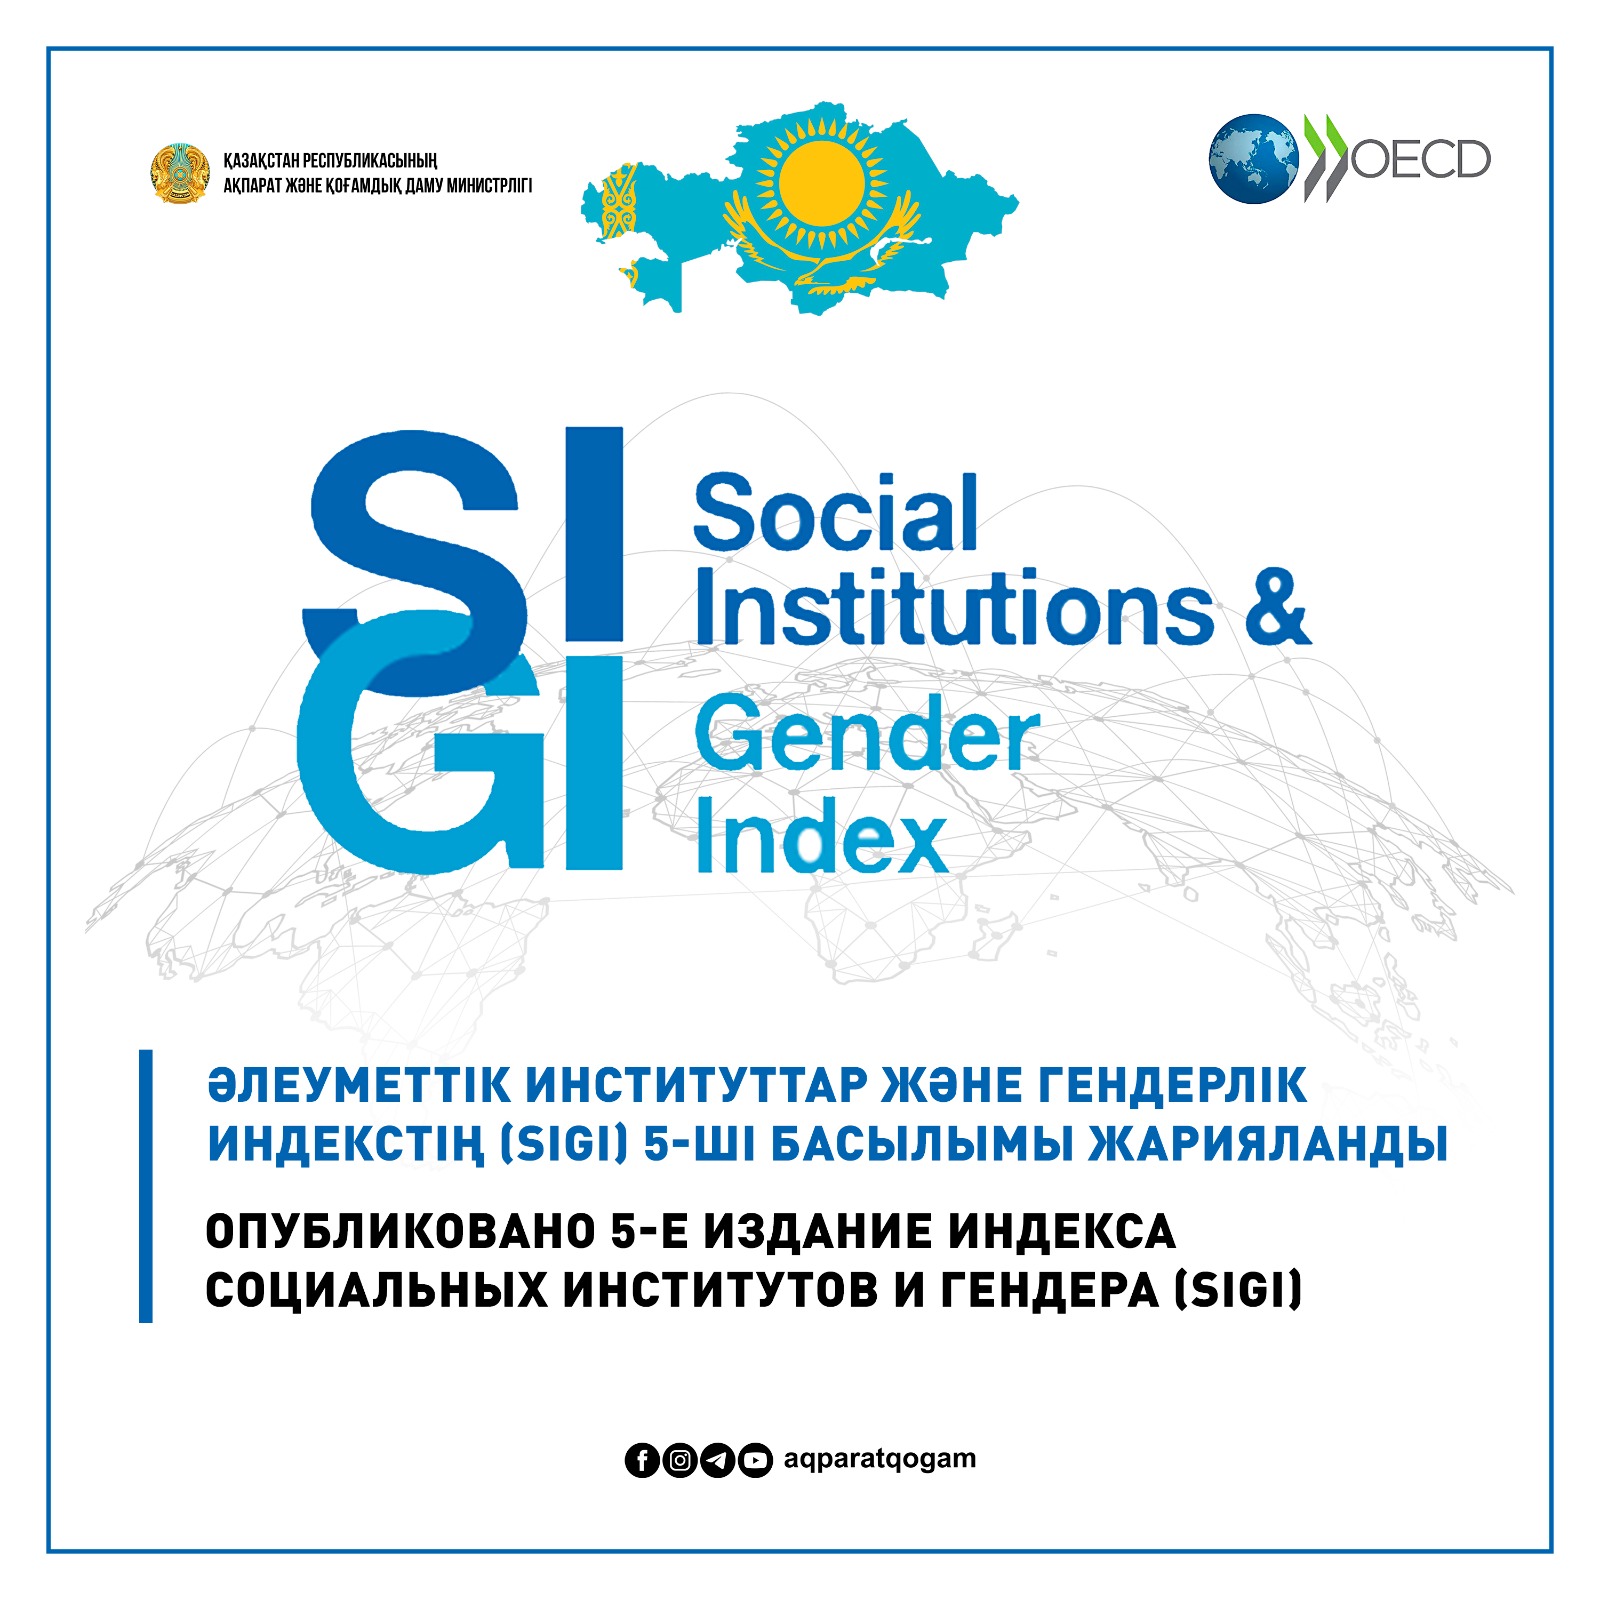 Опубликовано 5-е издание Индекса Социальных институтов и гендера (SIGI)